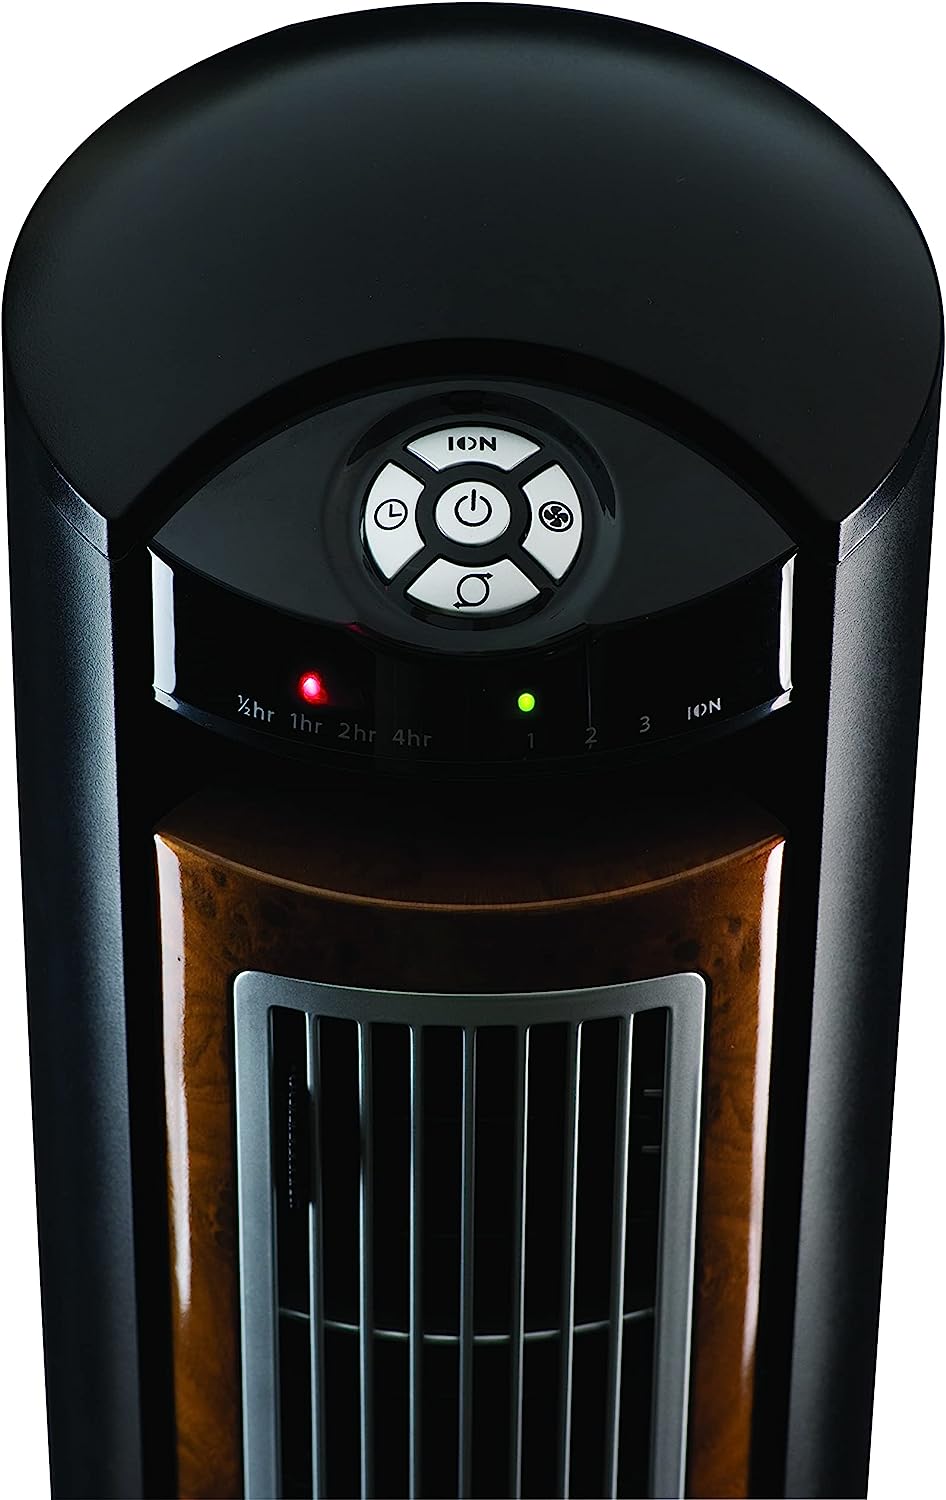 Ventilador de torre oscilante Lasko, control remoto, ionizador, 3 velocidades, temporizador, para dormitorio, oficina, cocina 42", negro, T42950